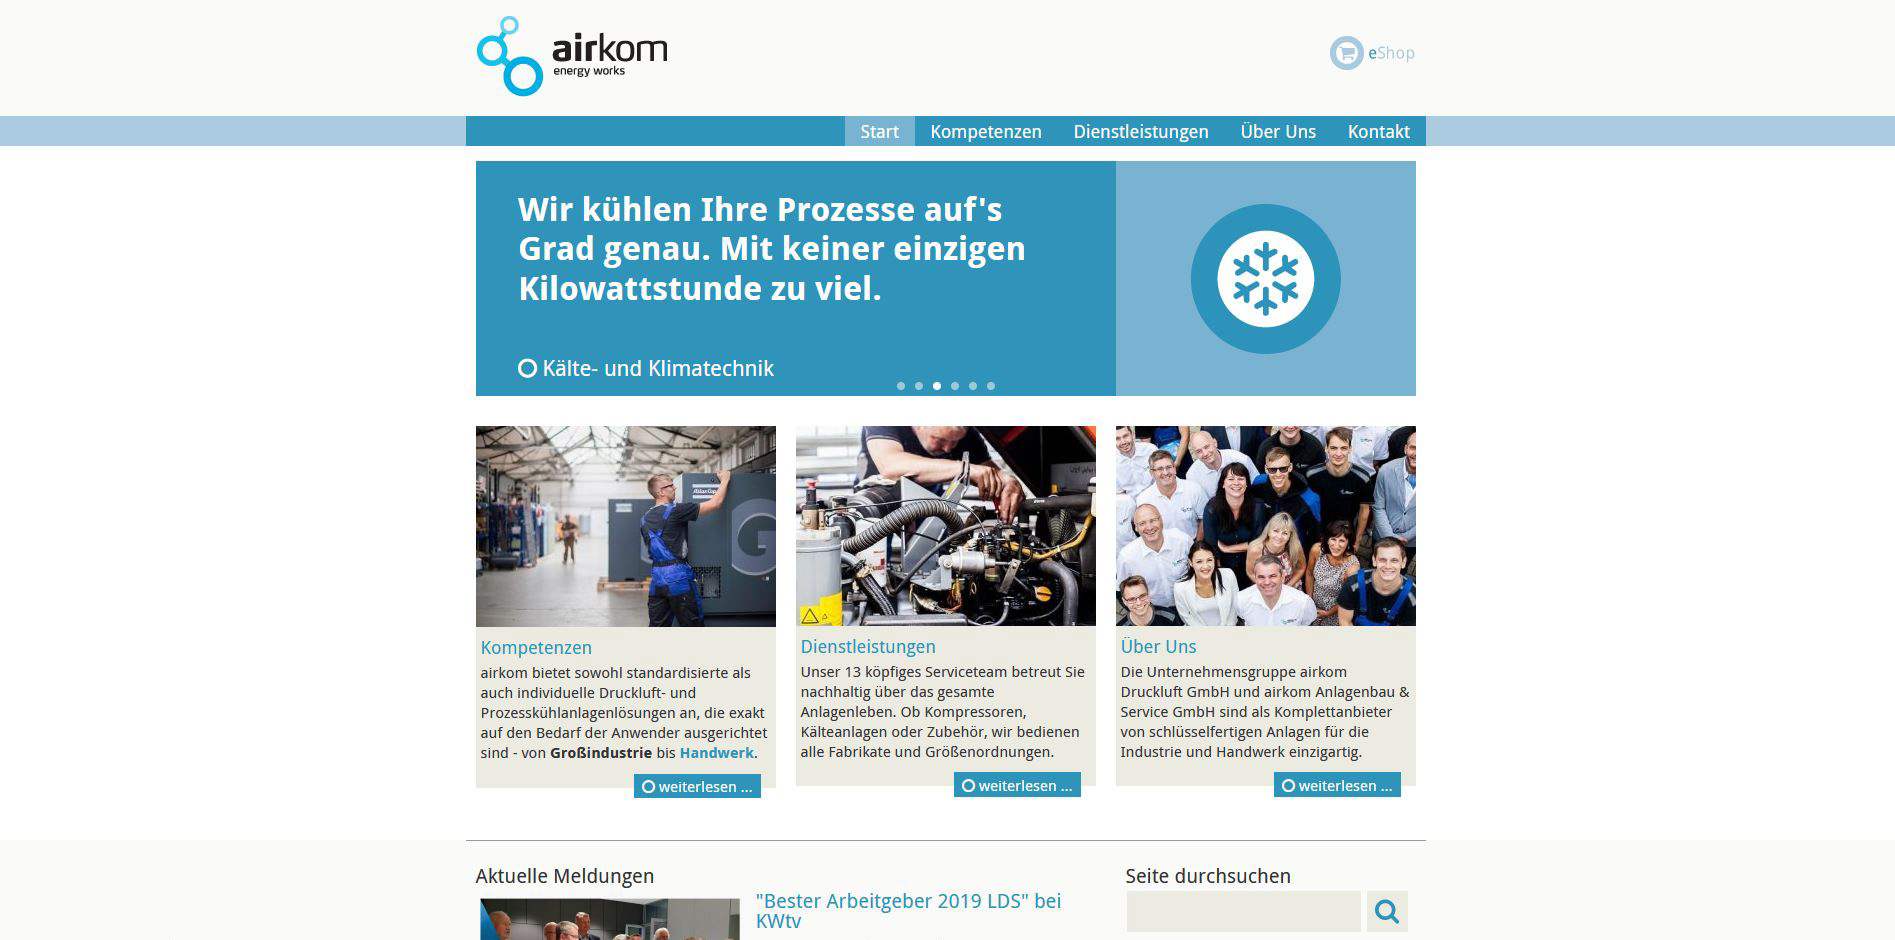 Kooperationen der airkom Anlagenbau & Service GmbH aus Wildau